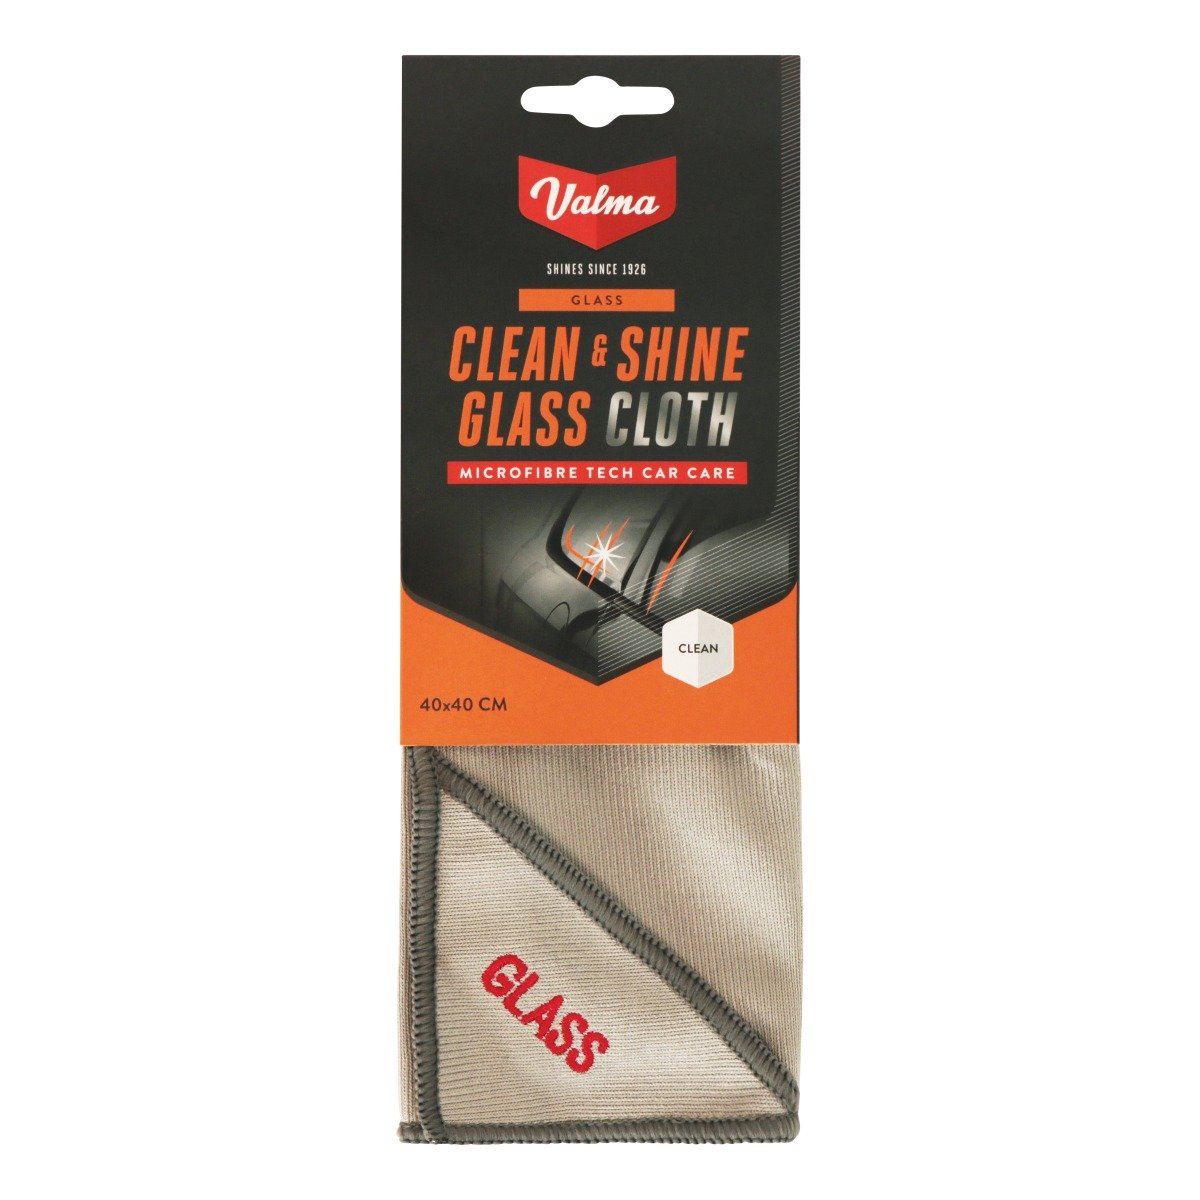 Clean & Shine Glass Cloth - 40x40cm